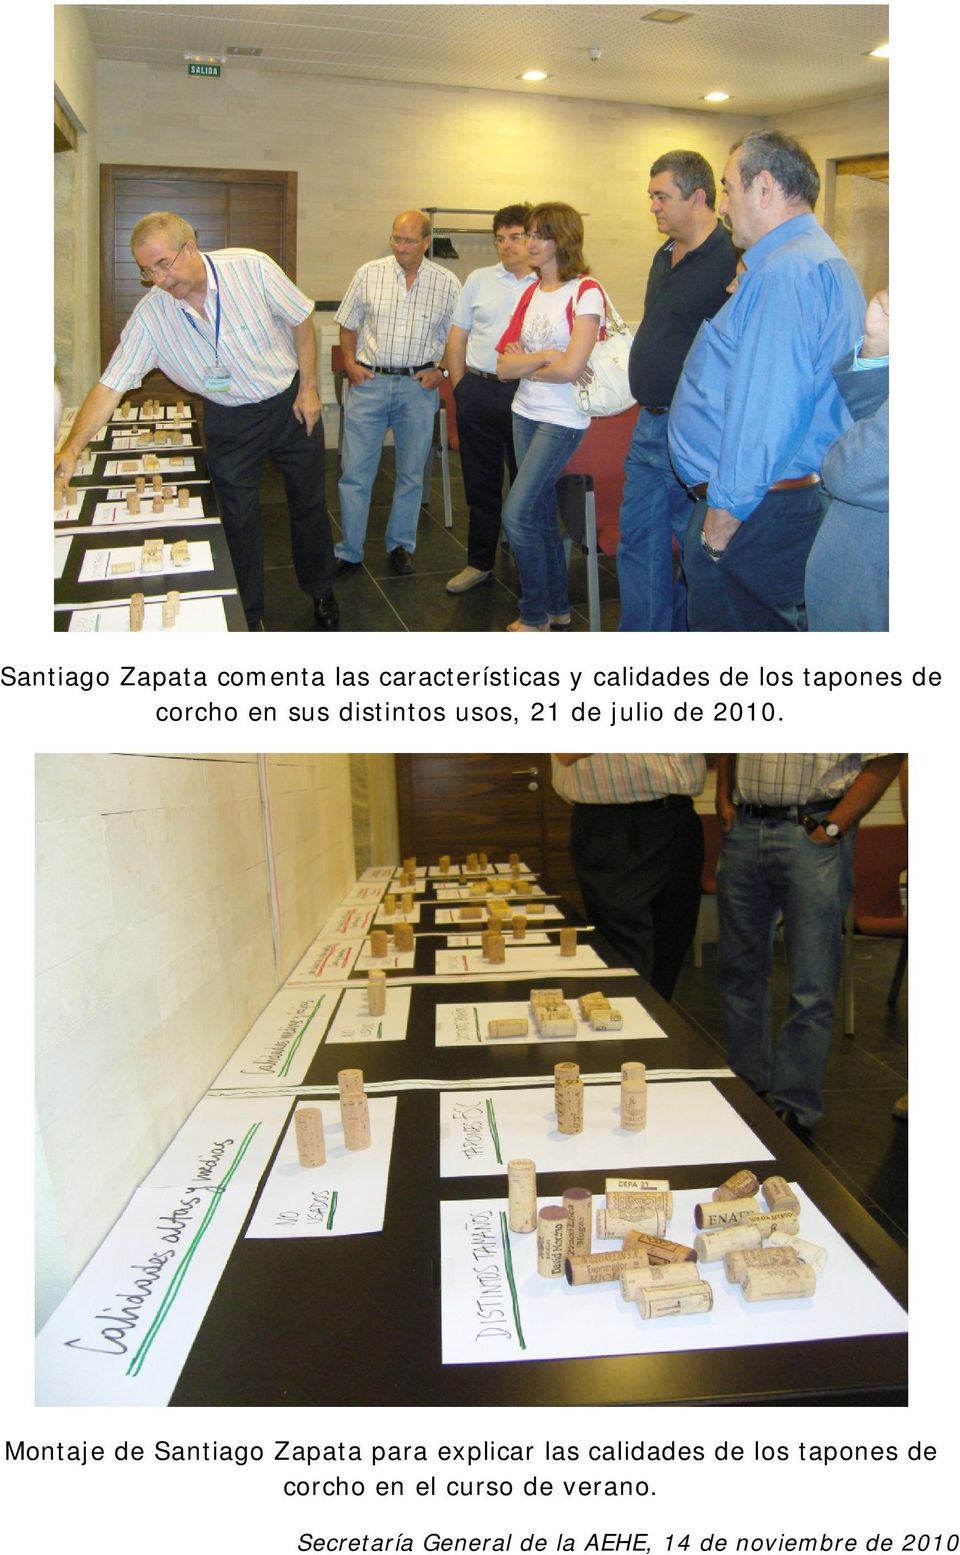 Montaje de Santiago Zapata para explicar las calidades de los tapones